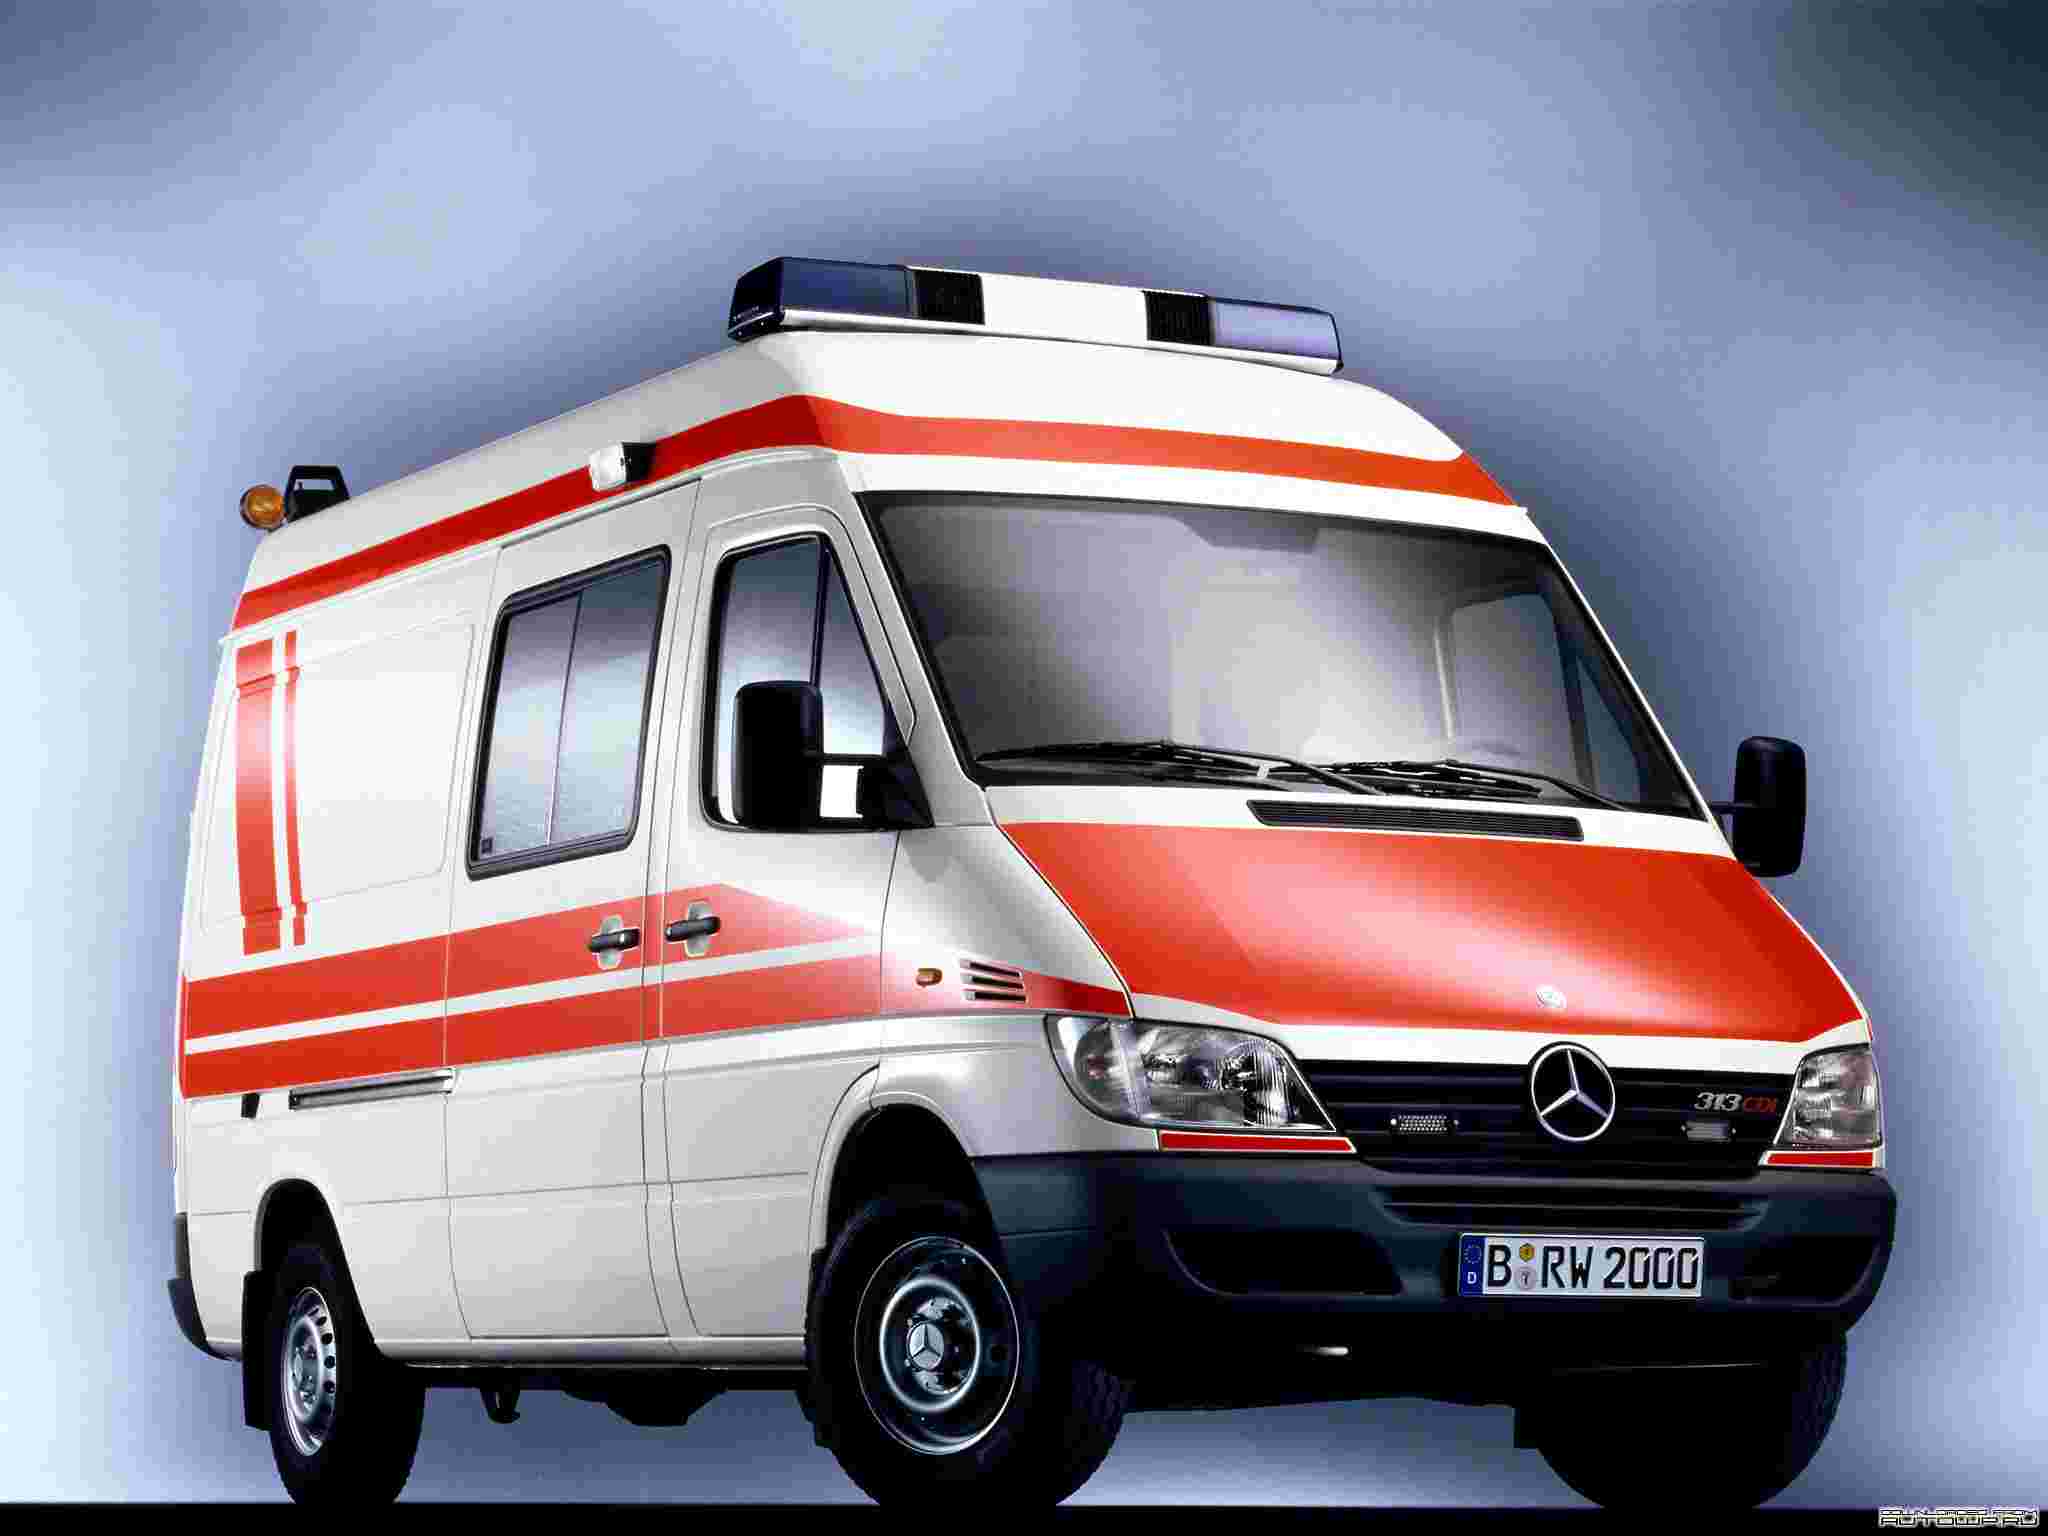 Ambulance HD Wallpaper Image Of